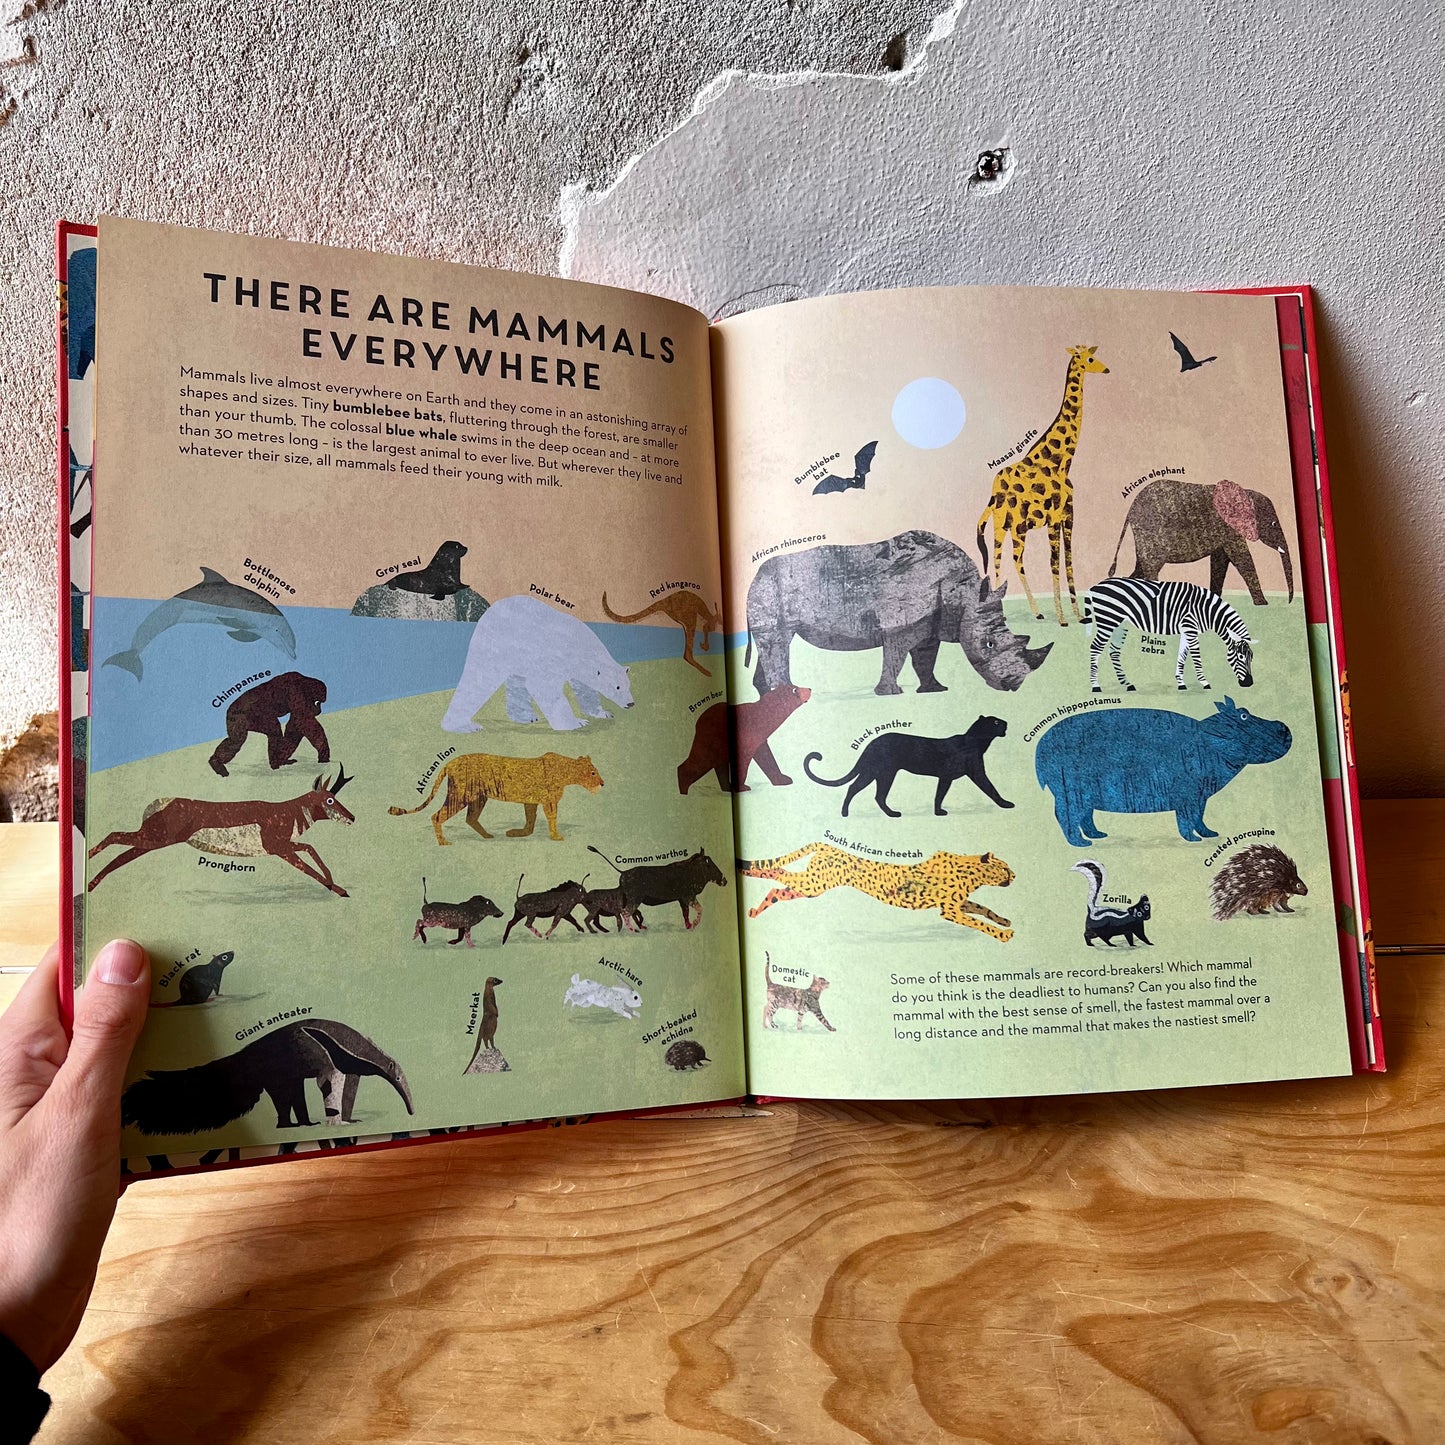 There Are Mammals Everywhere – Camilla De La Bedoyere, Britta Teckentrup